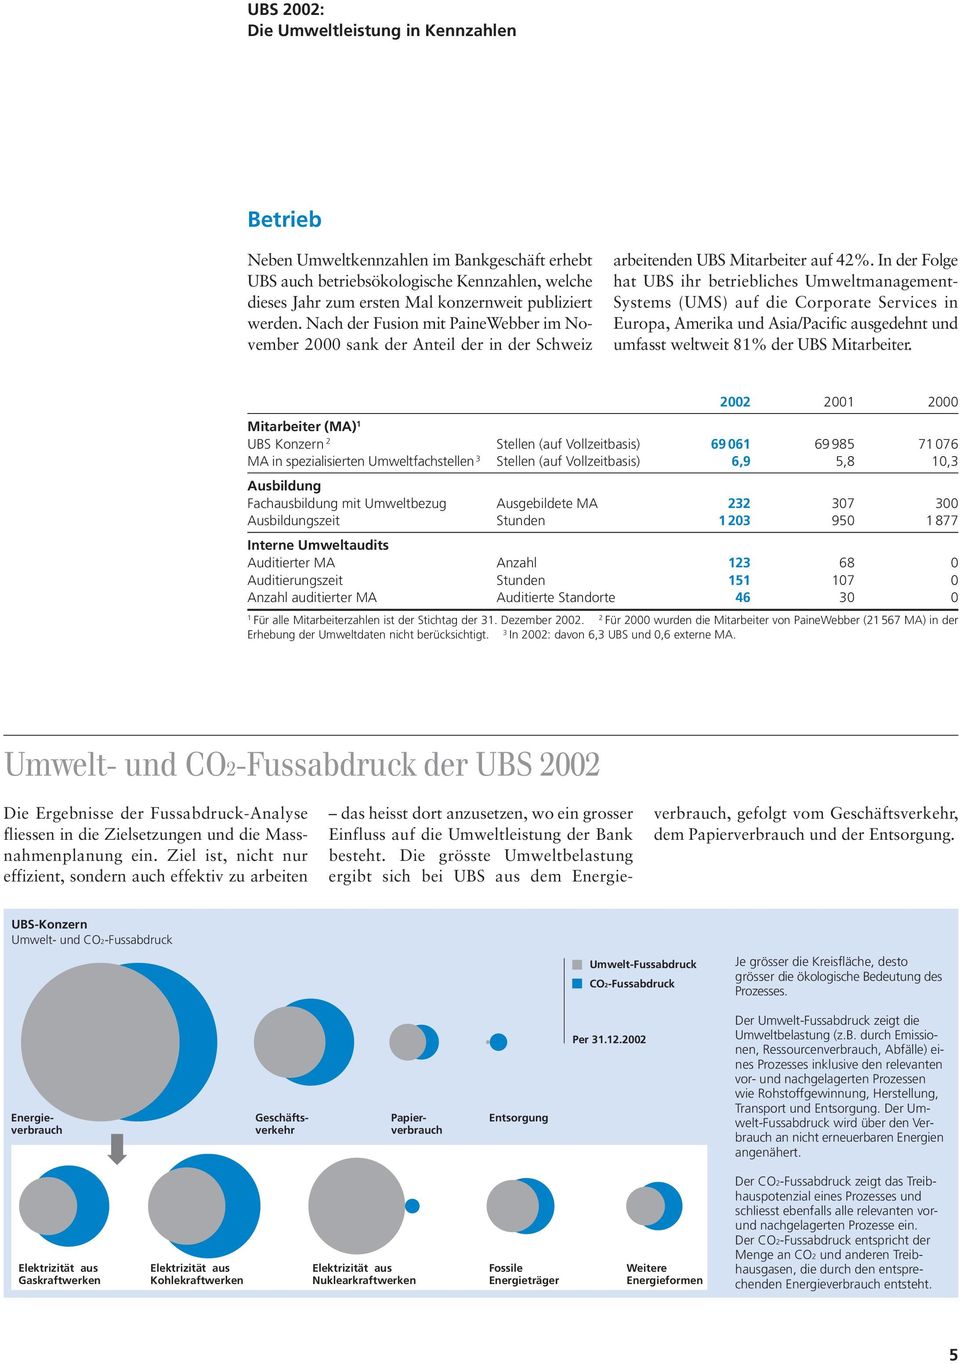 In der Folge hat UBS ihr betriebliches Umweltmanagement- Systems (UMS) auf die Corporate Services in Europa, Amerika und Asia/Pacific ausgedehnt und umfasst weltweit 81% der UBS Mitarbeiter.